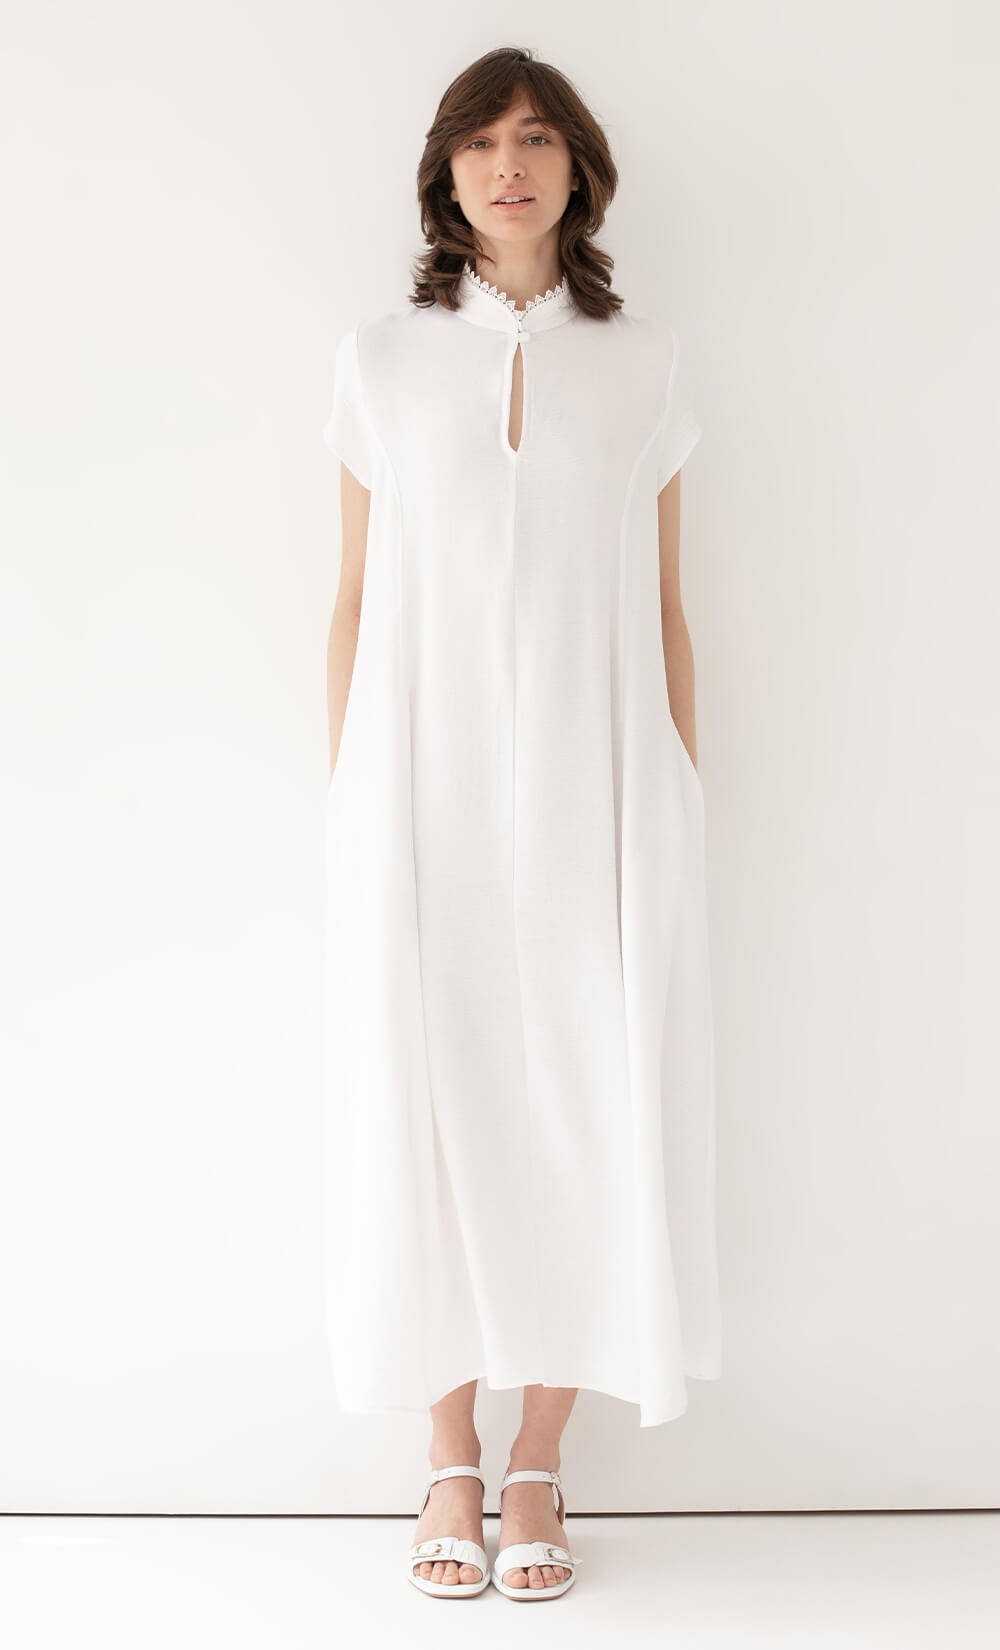 White Daka Dress